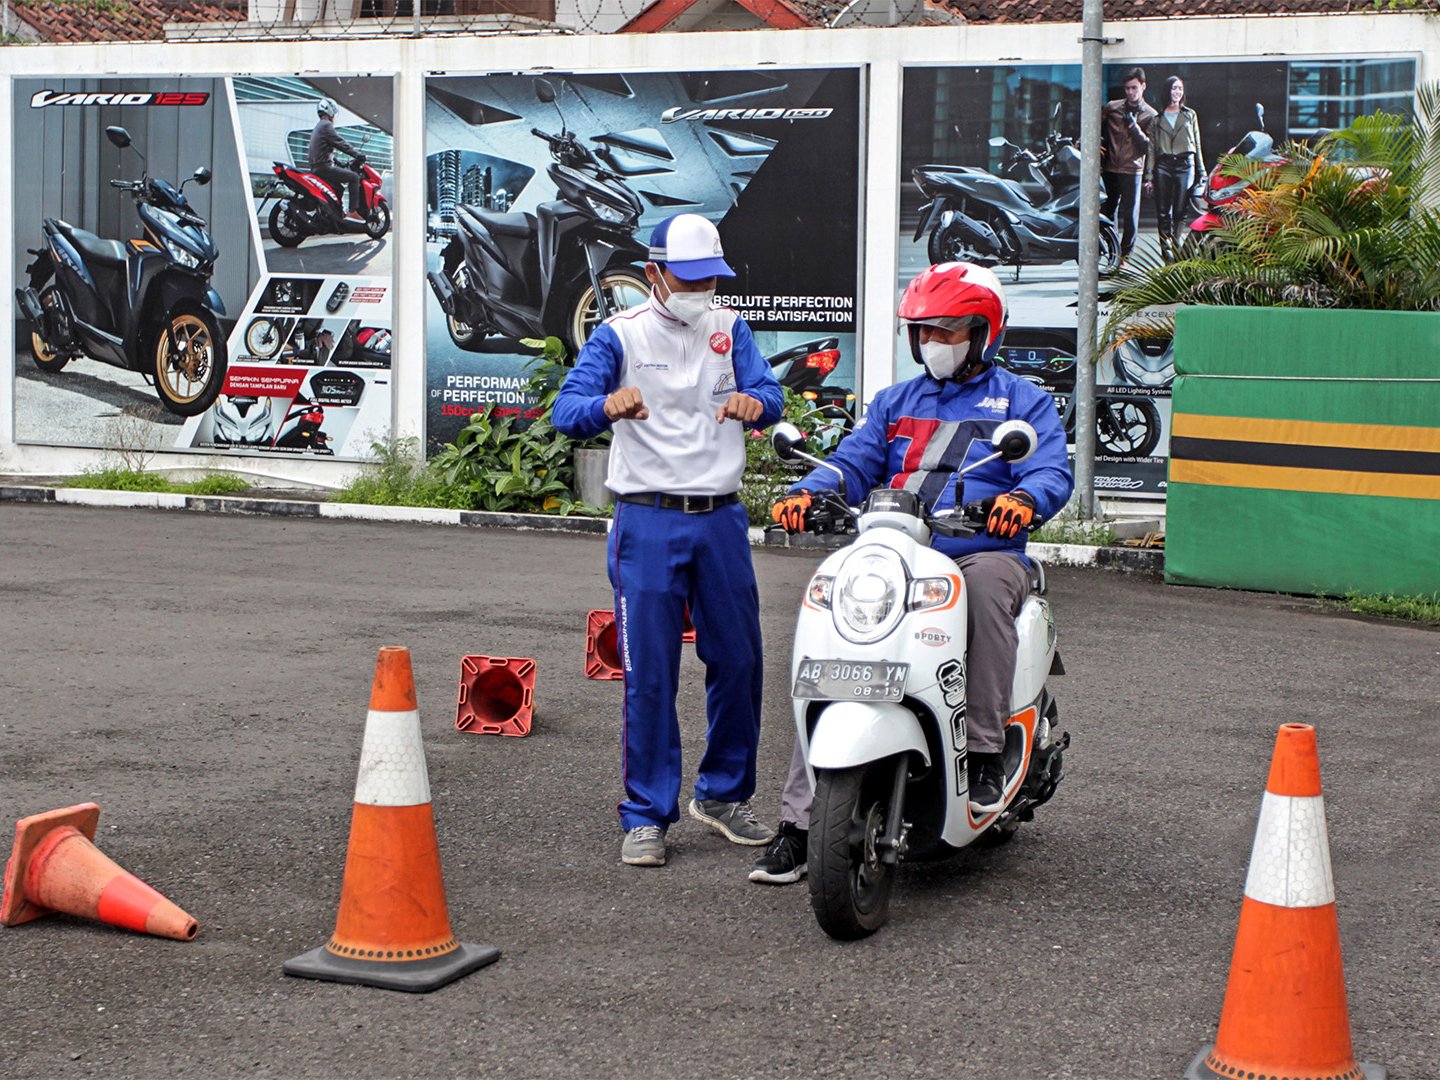 Astra Motor Latih Safety Riding Puluhan Ribu Biker Yogyakarta